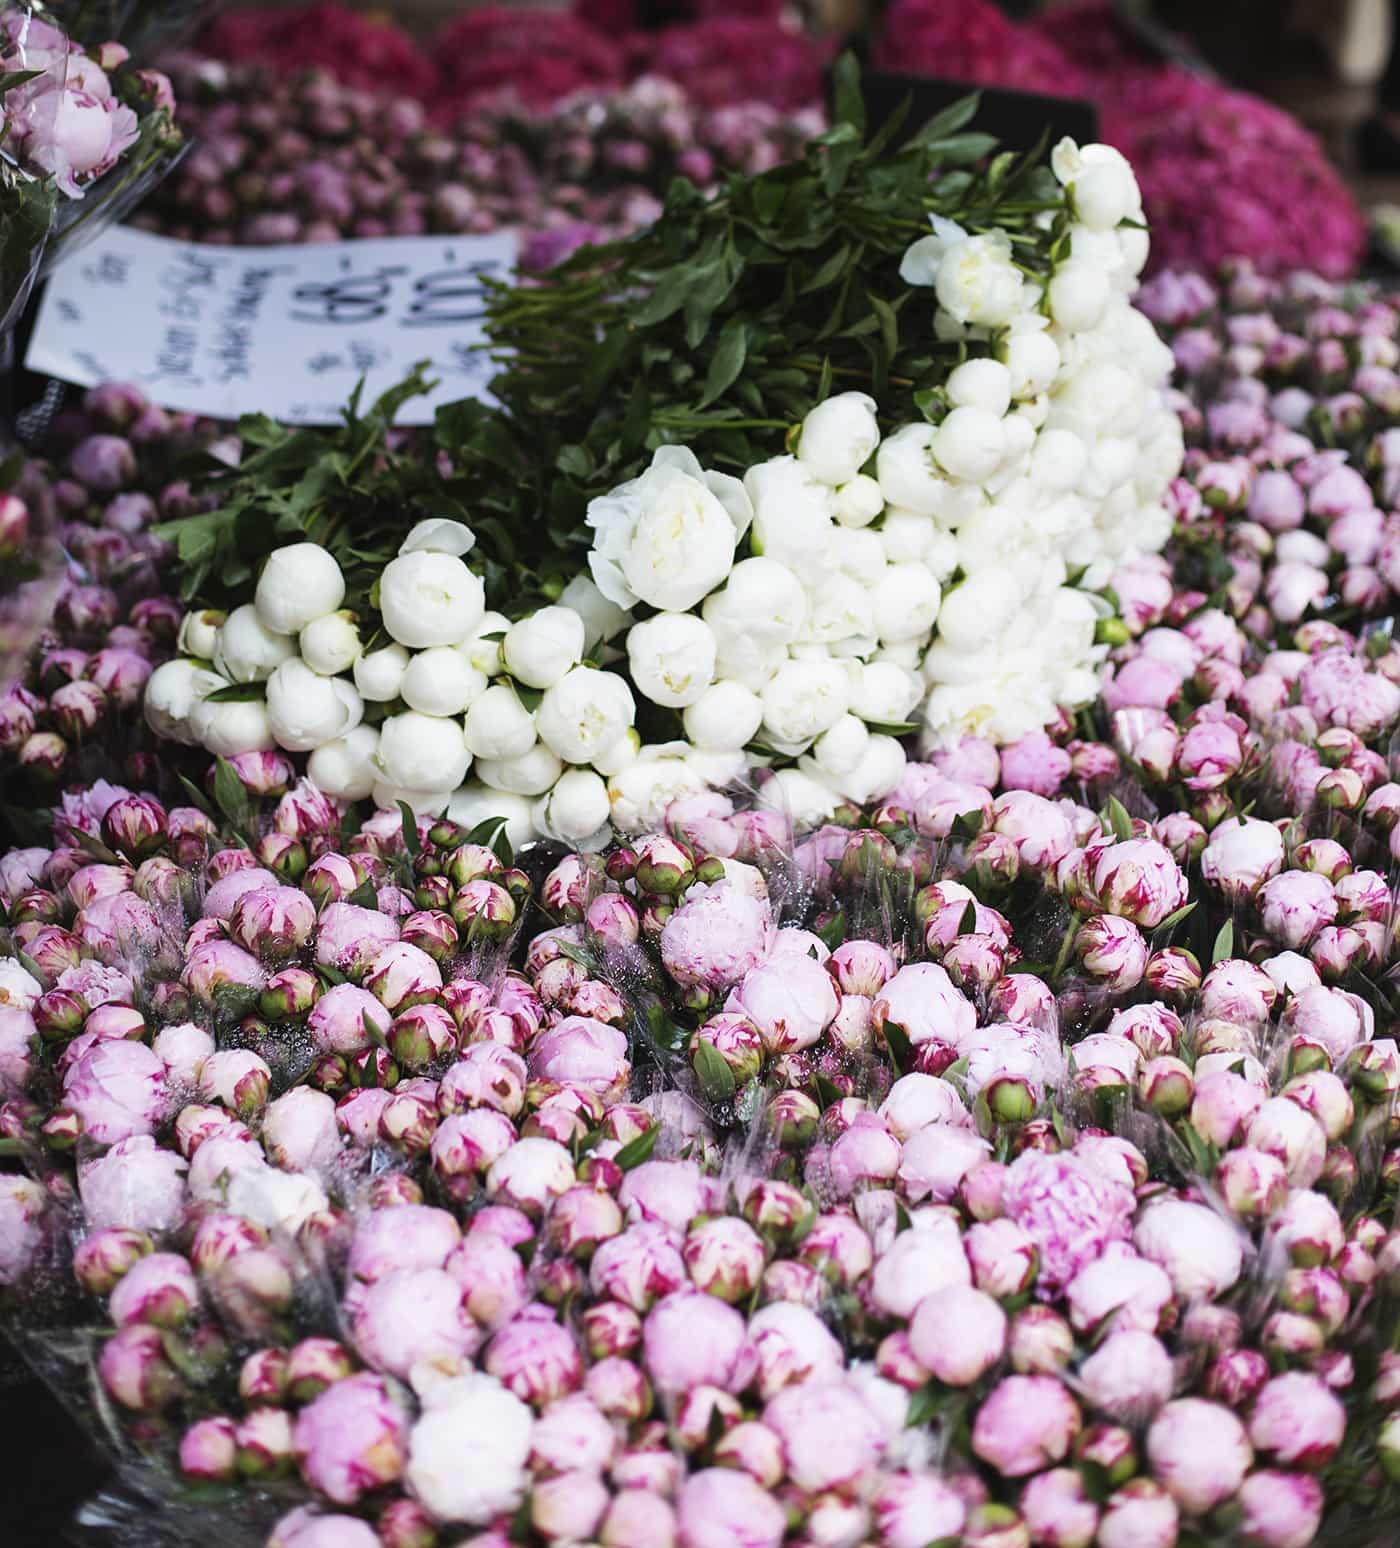 Copenhagen | wanderlust | flower market | peonies